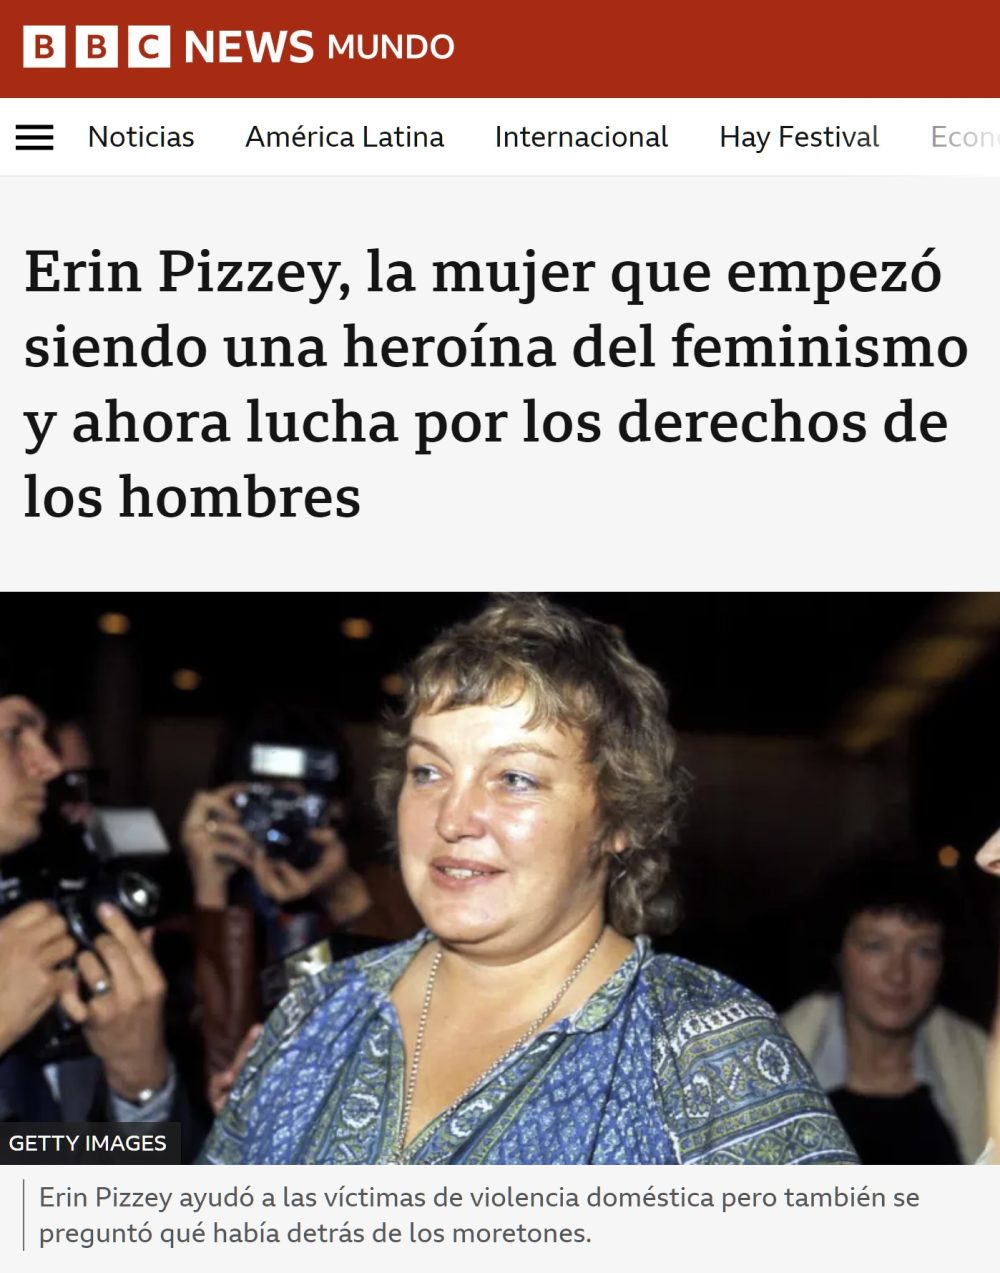 La heroína del feminismo que ahora lucha por los derechos de los hombres.